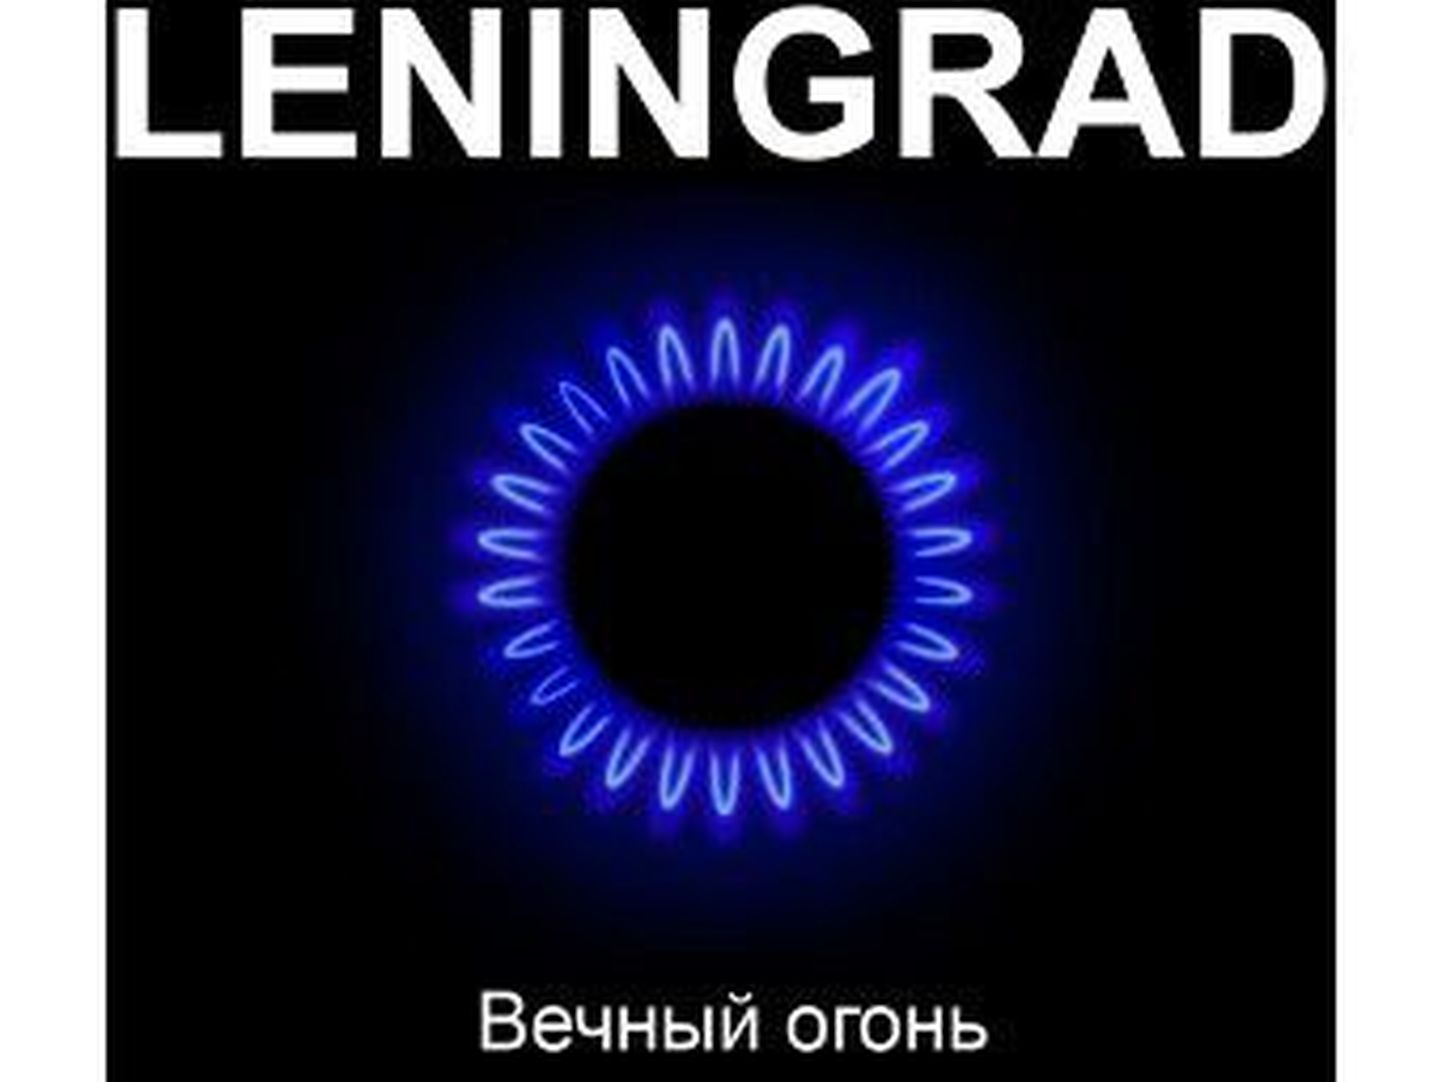 Ленинград - "Вечный огонь"